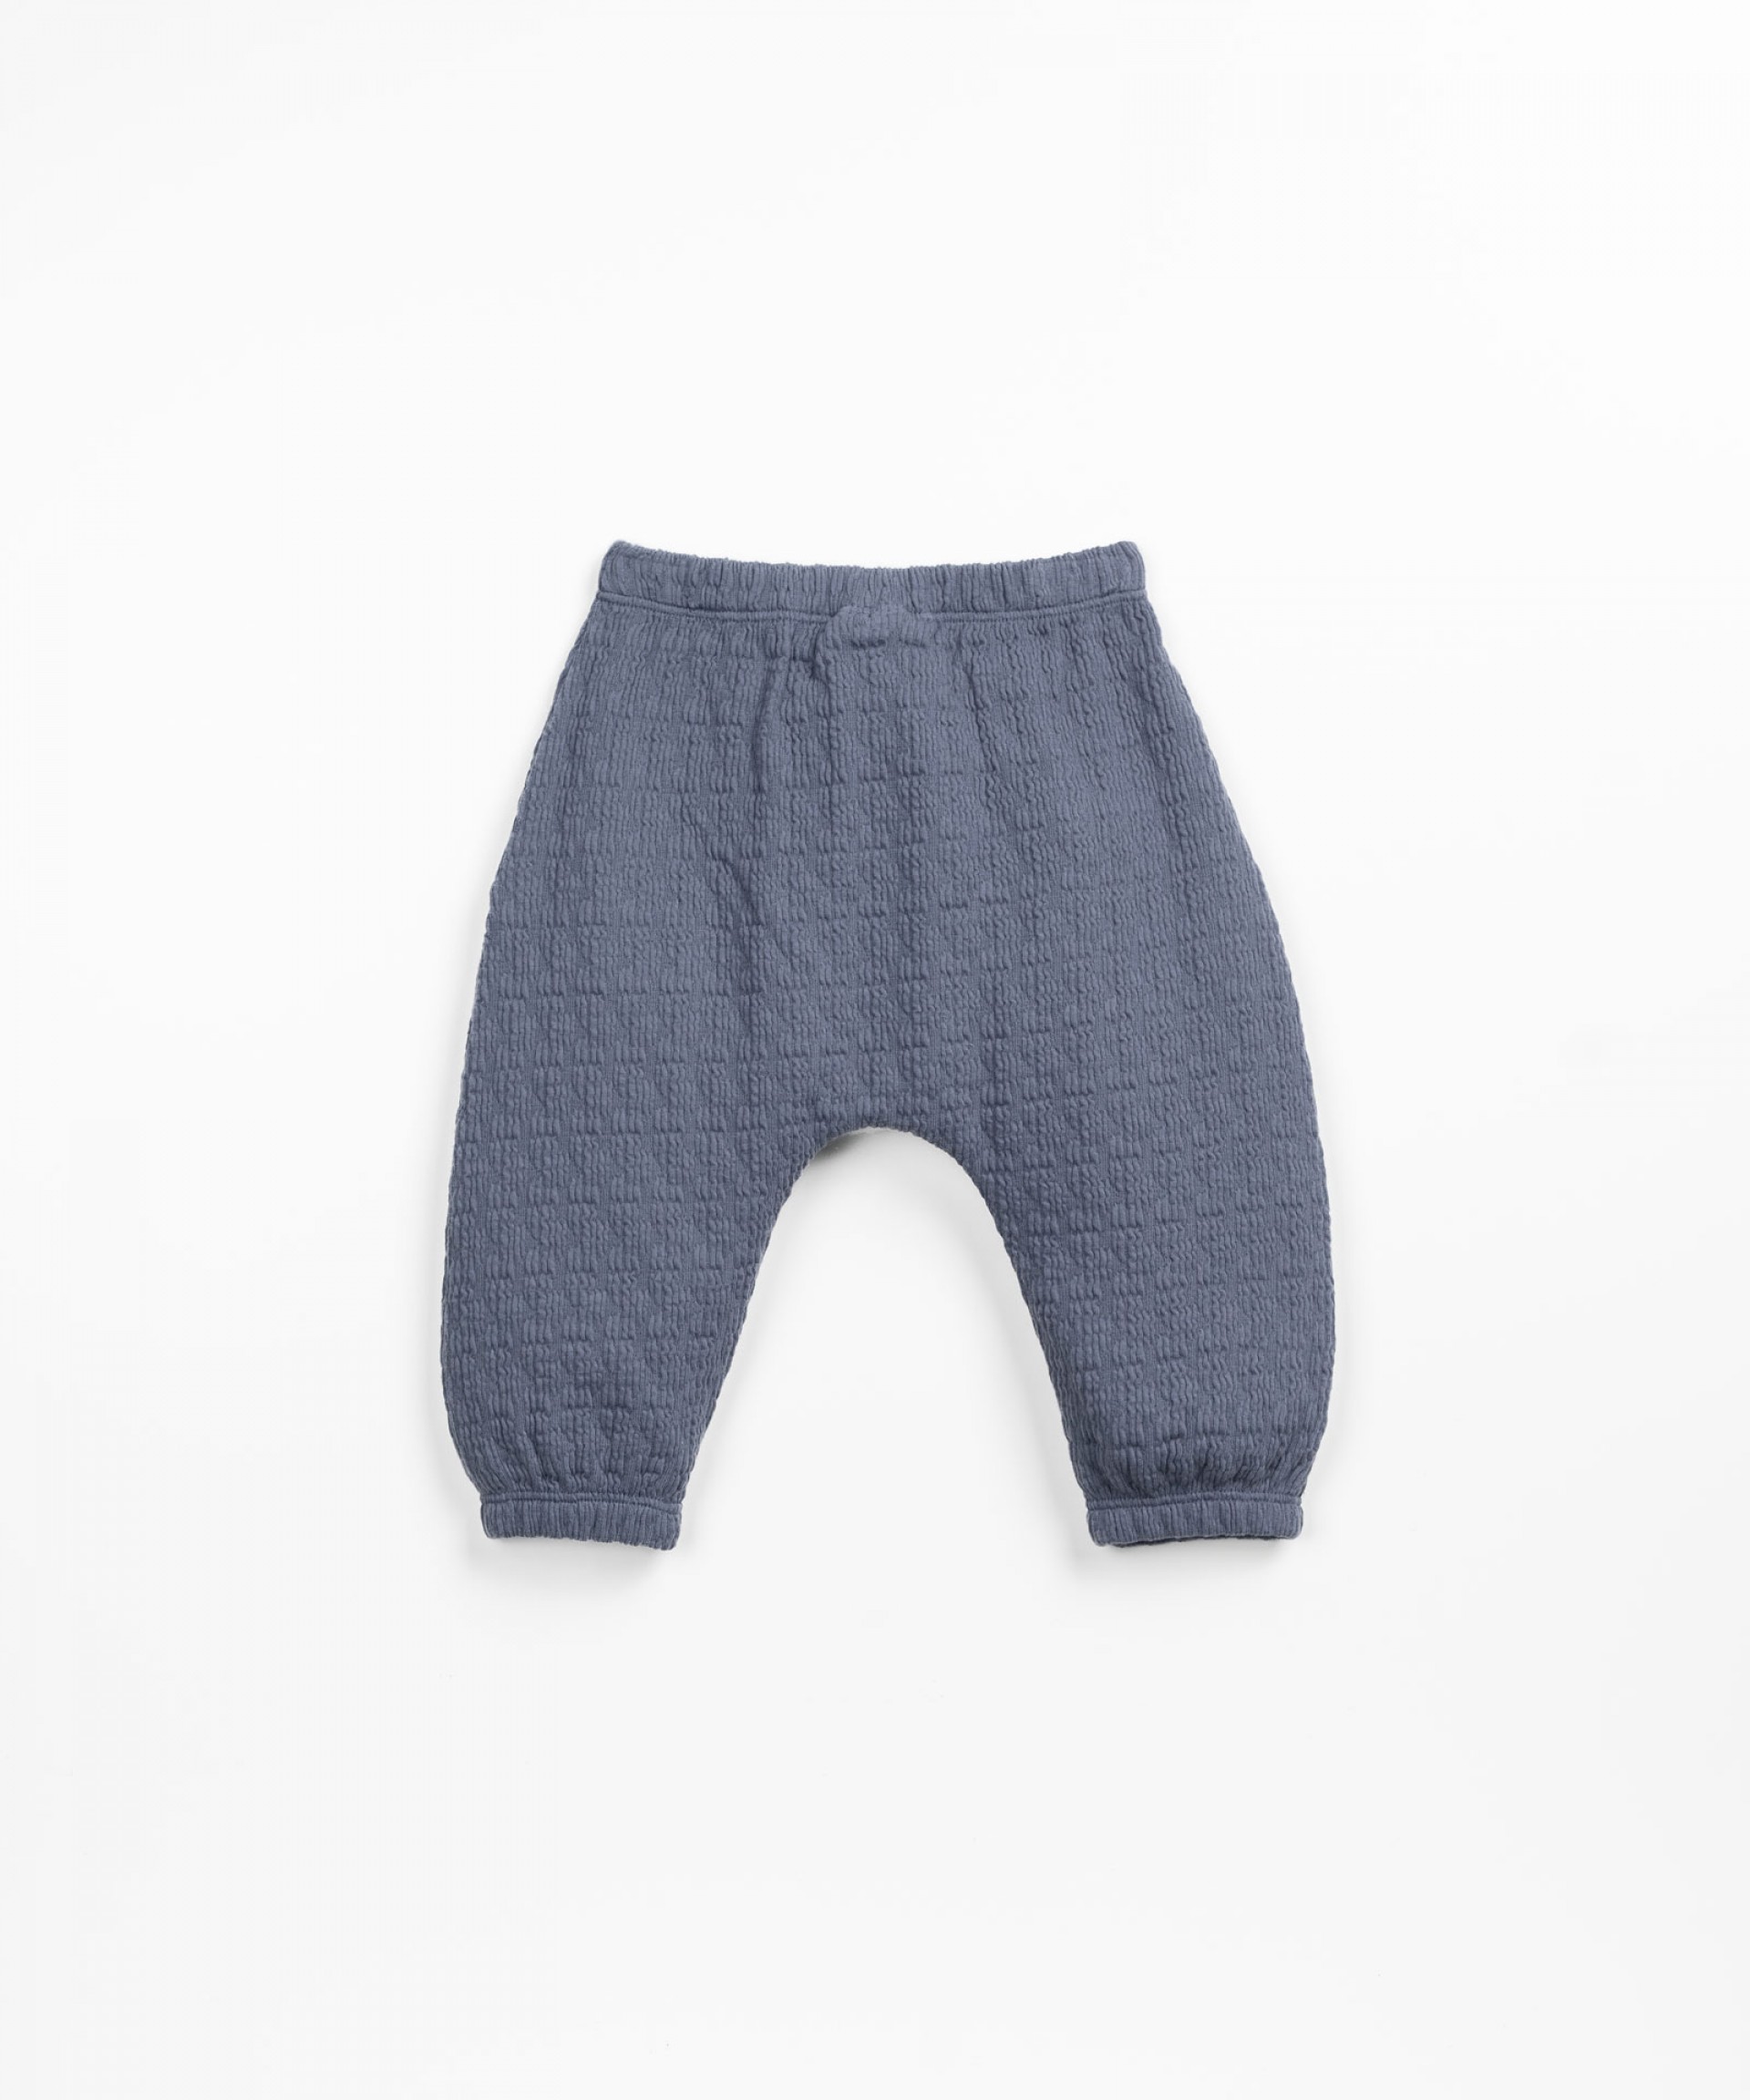 Pantaloni in cotone biologico e poliestere riciclato | Textile Art